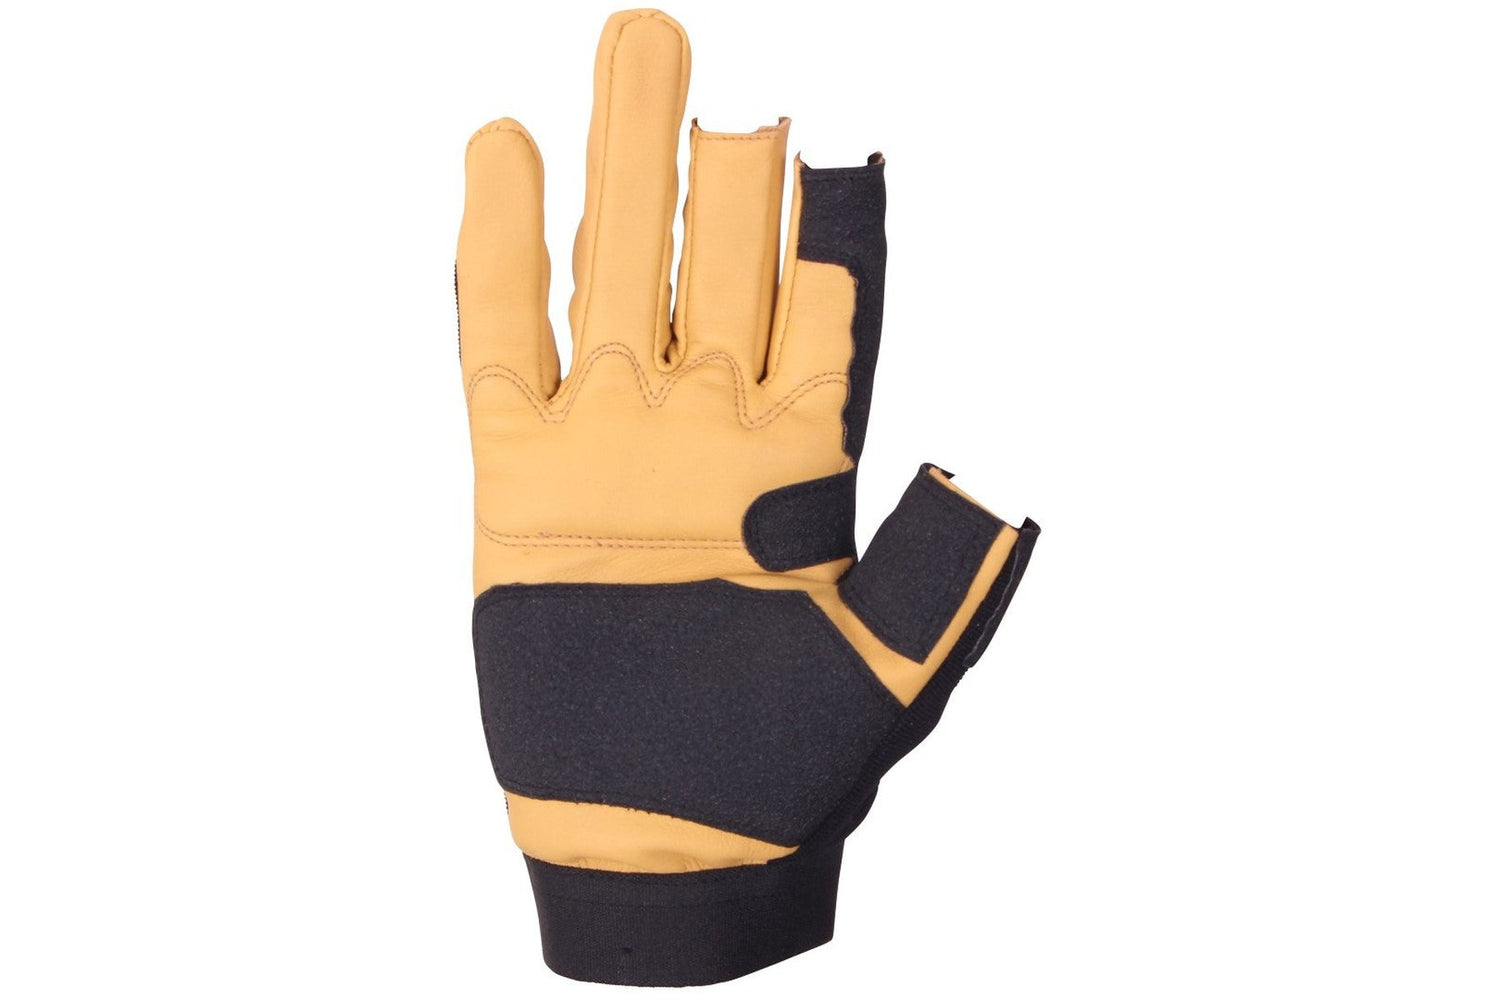 Forgemann Leather Farrier Work Gloves